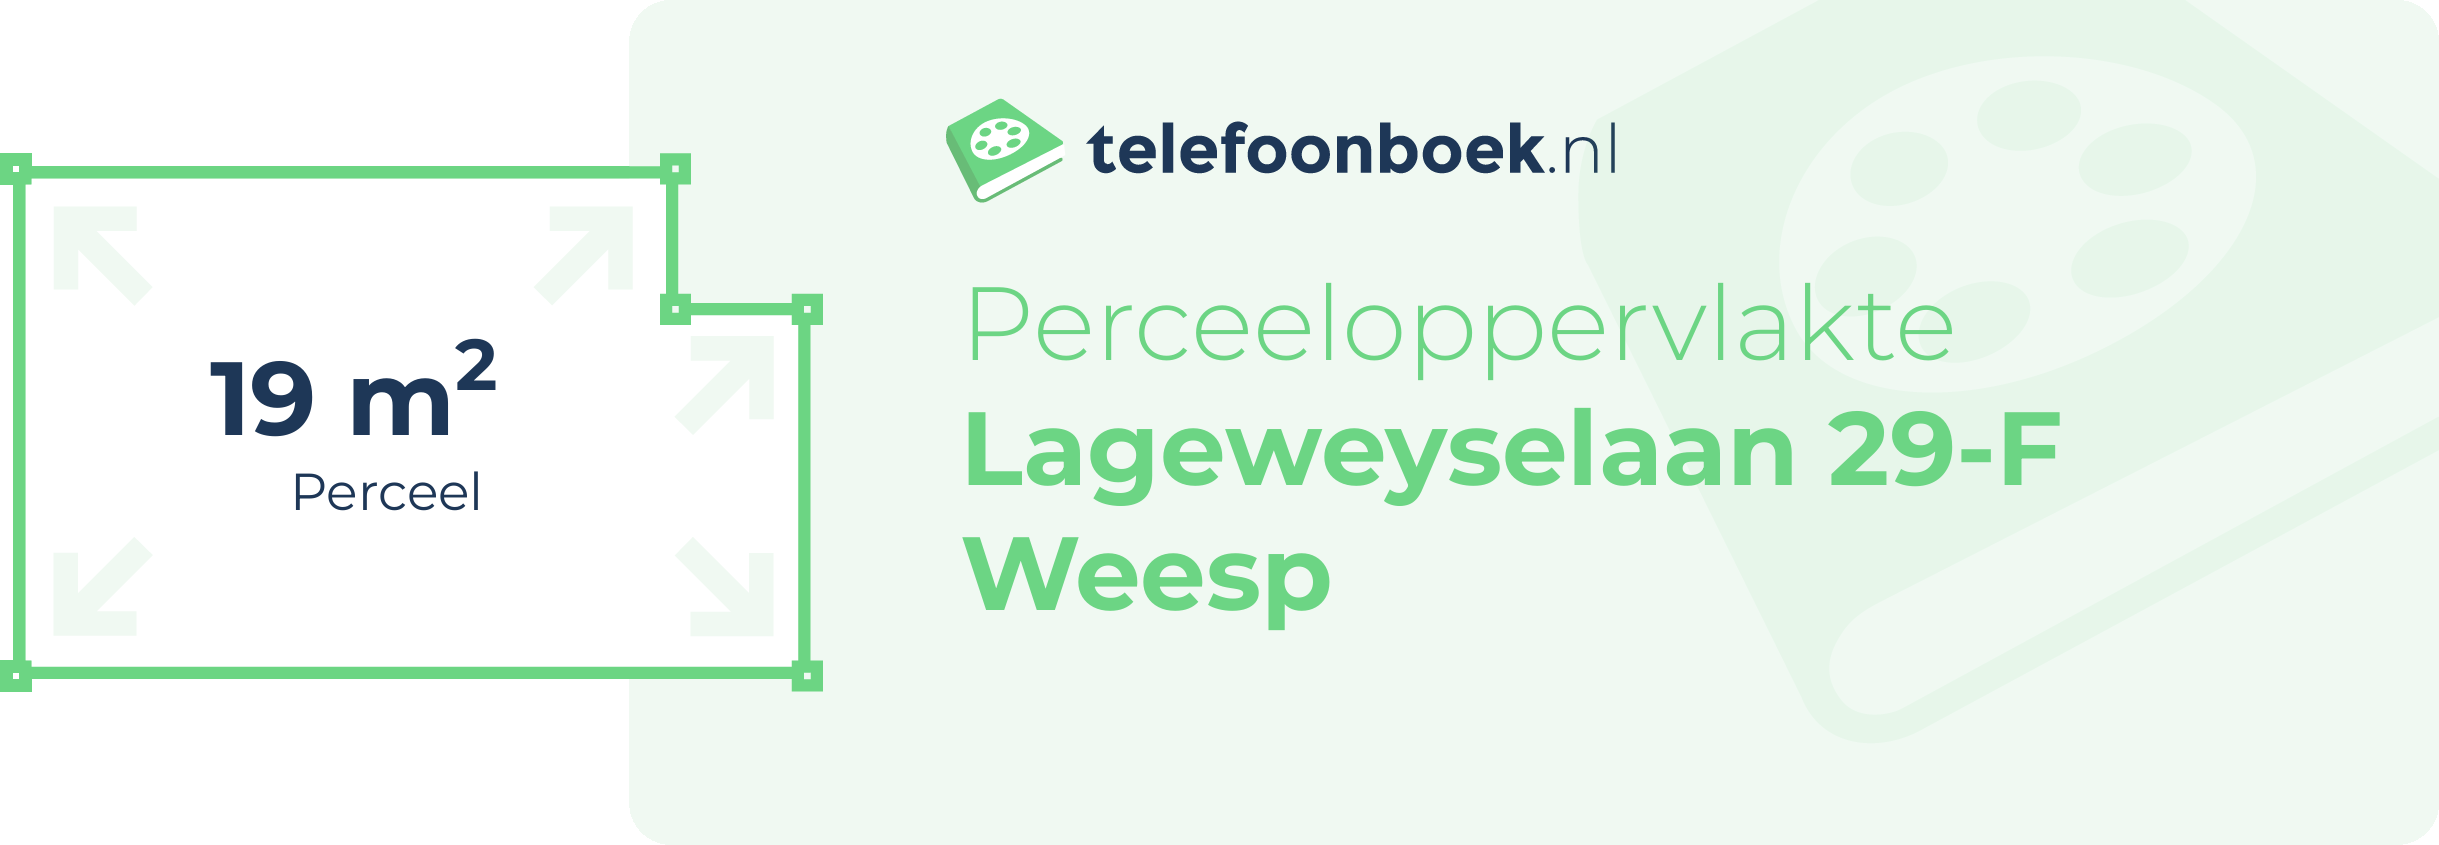 Perceeloppervlakte Lageweyselaan 29-F Weesp